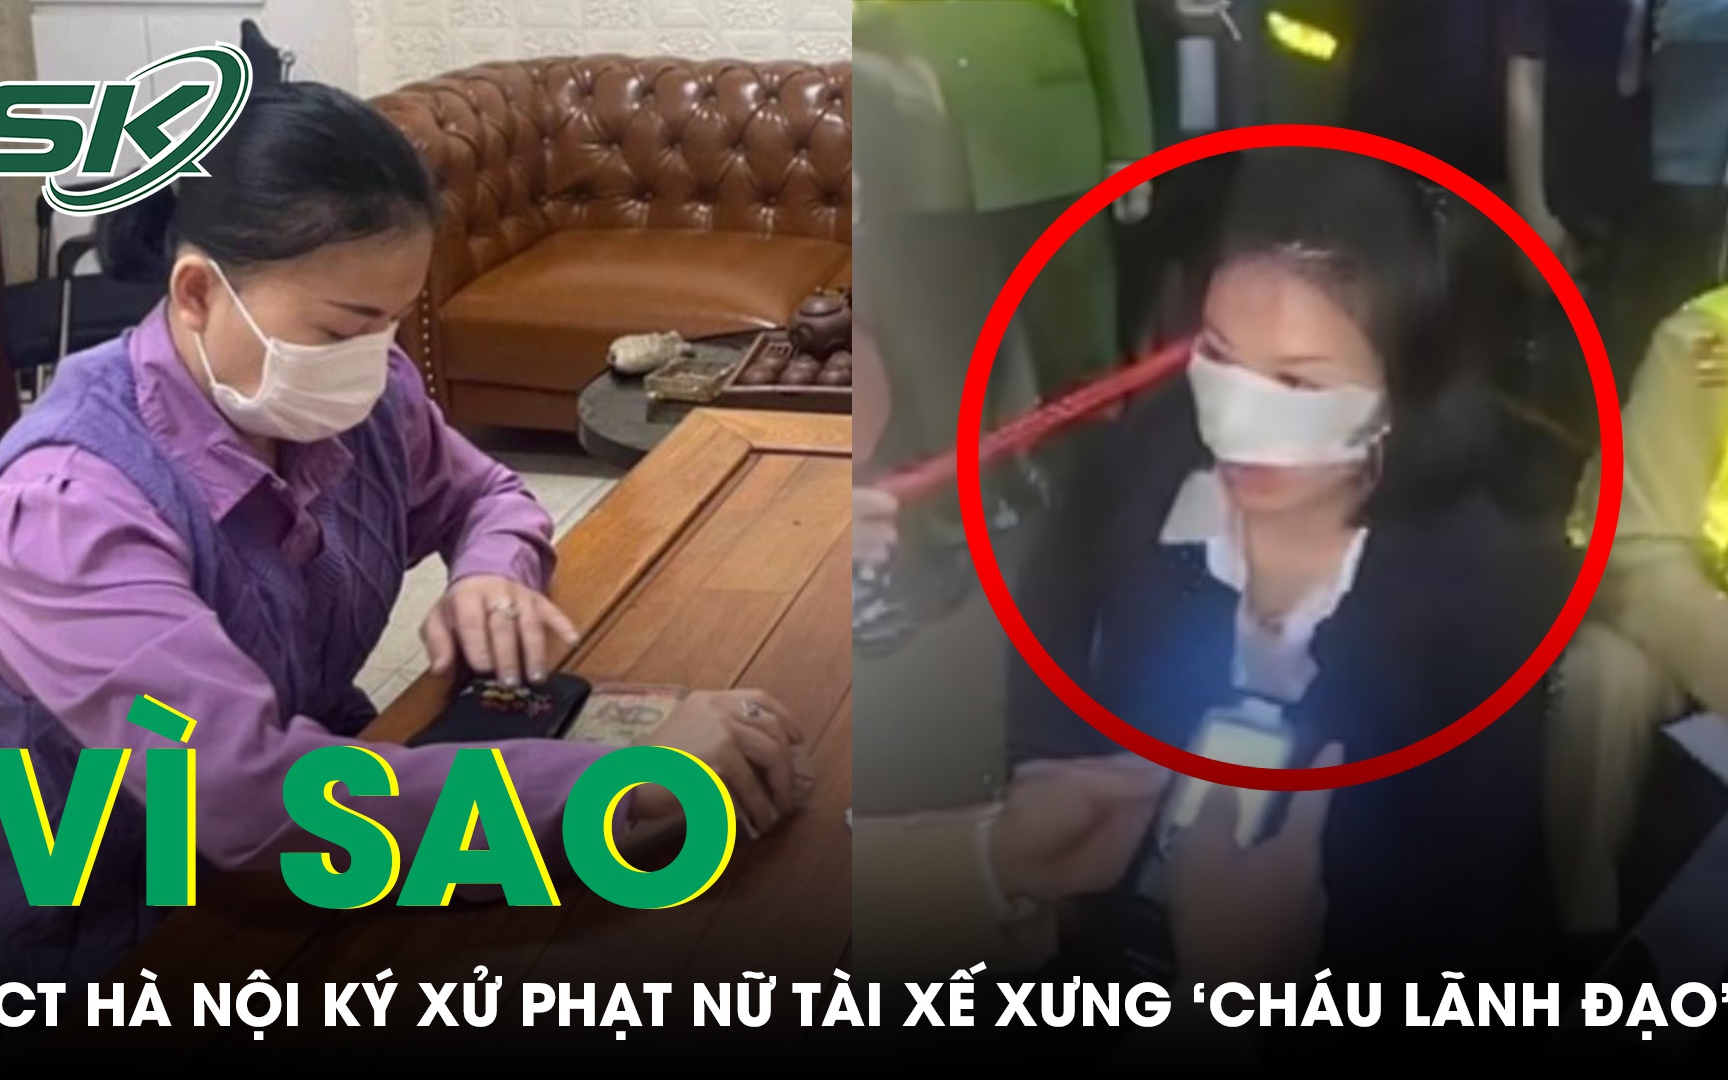 Vì sao Chủ tịch Hà Nội ký xử phạt vụ nữ tài xế tự xưng ‘cháu lãnh đạo Bộ Công an’?